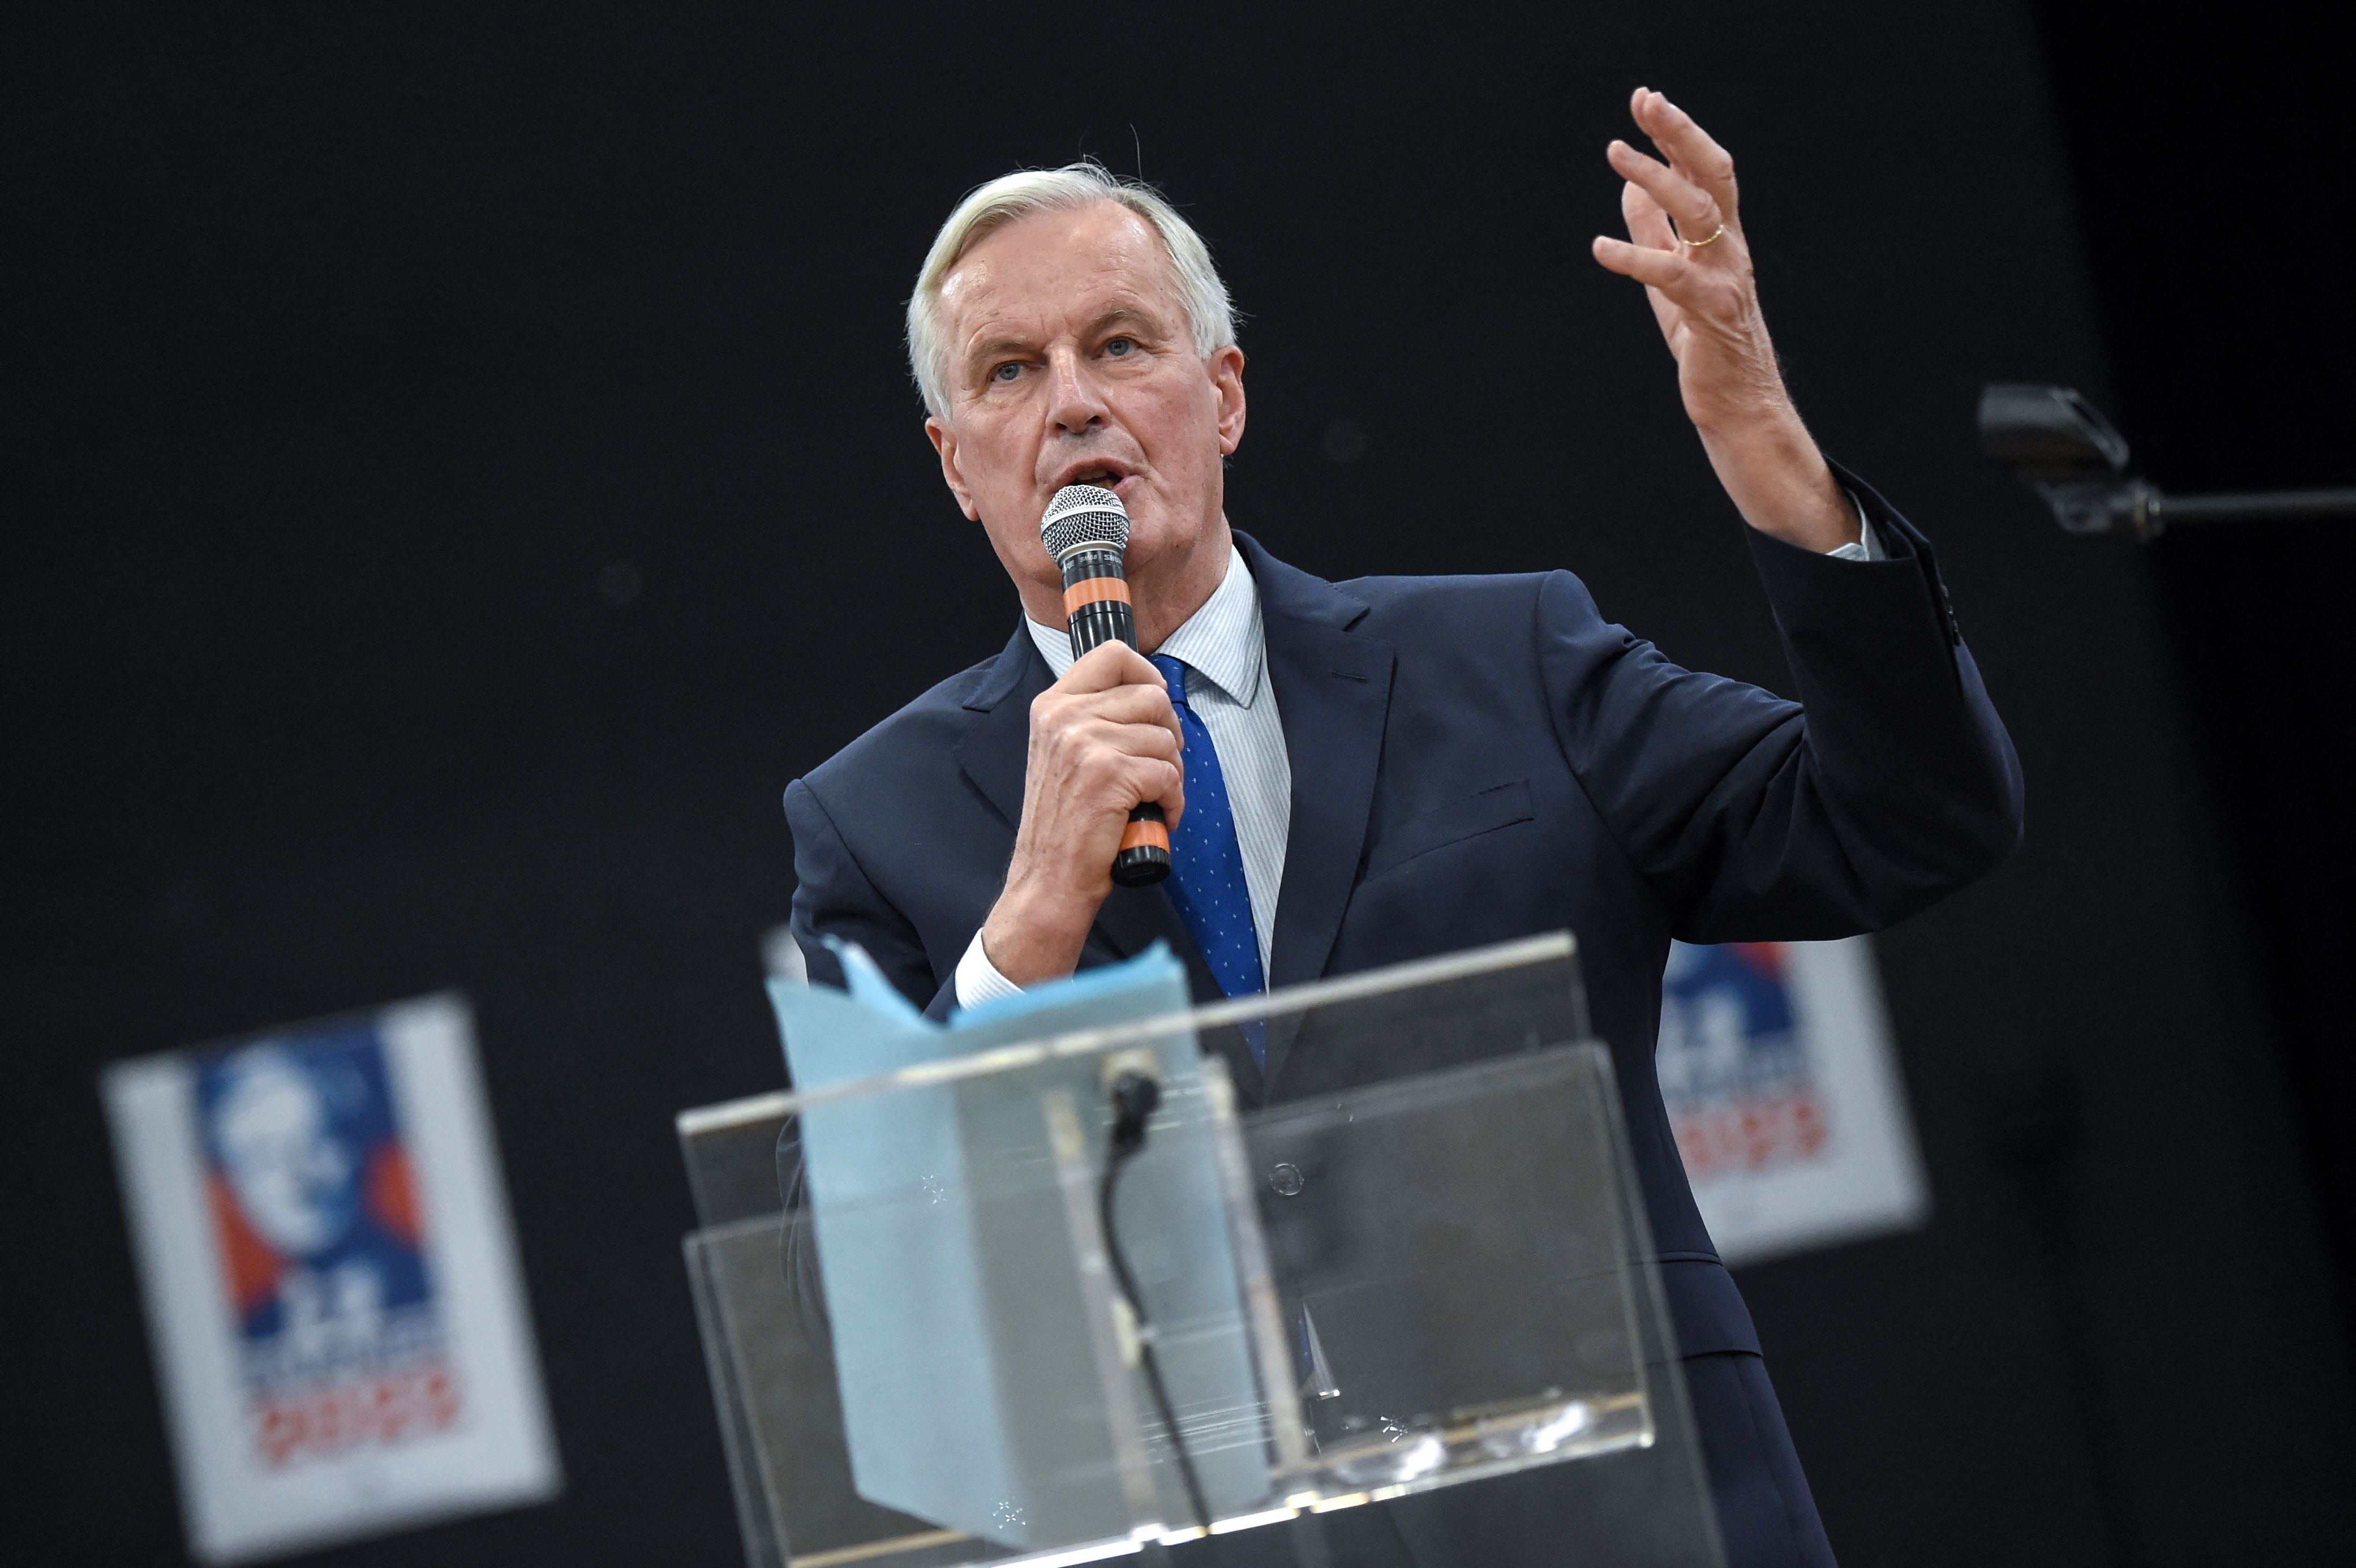 Michel Barnier wants the Les Républicains nomination for president